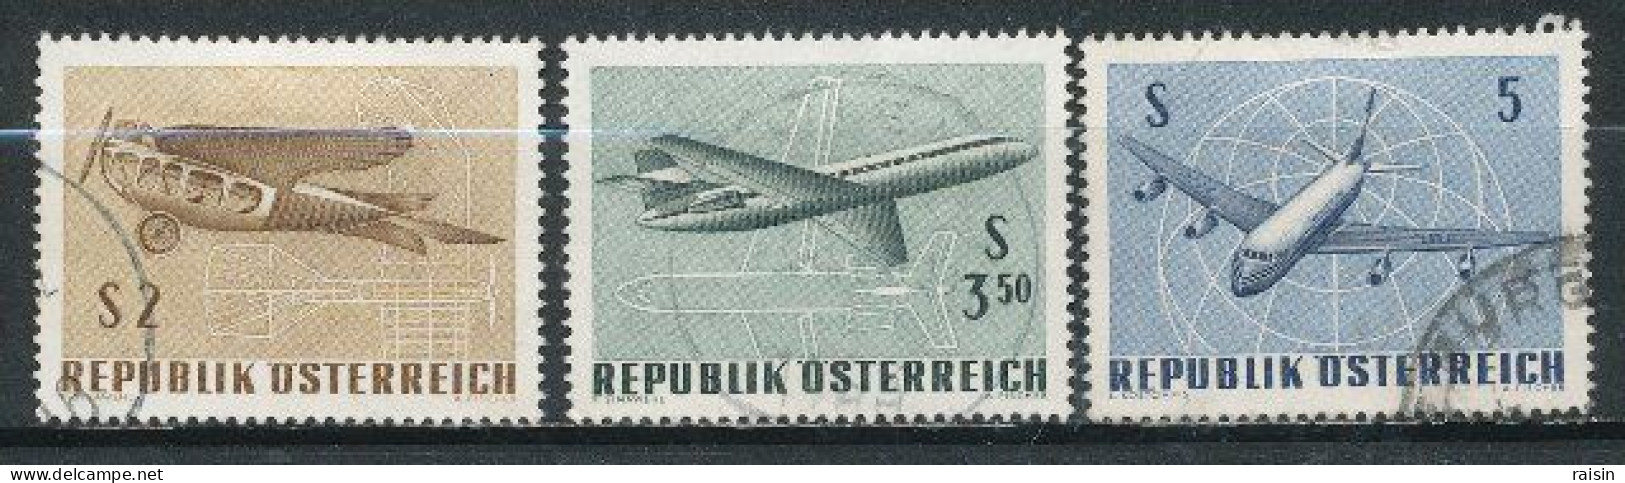 Autriche 1968  Michel 1262-65,  Yvert PA 63-65 - Oblitérés